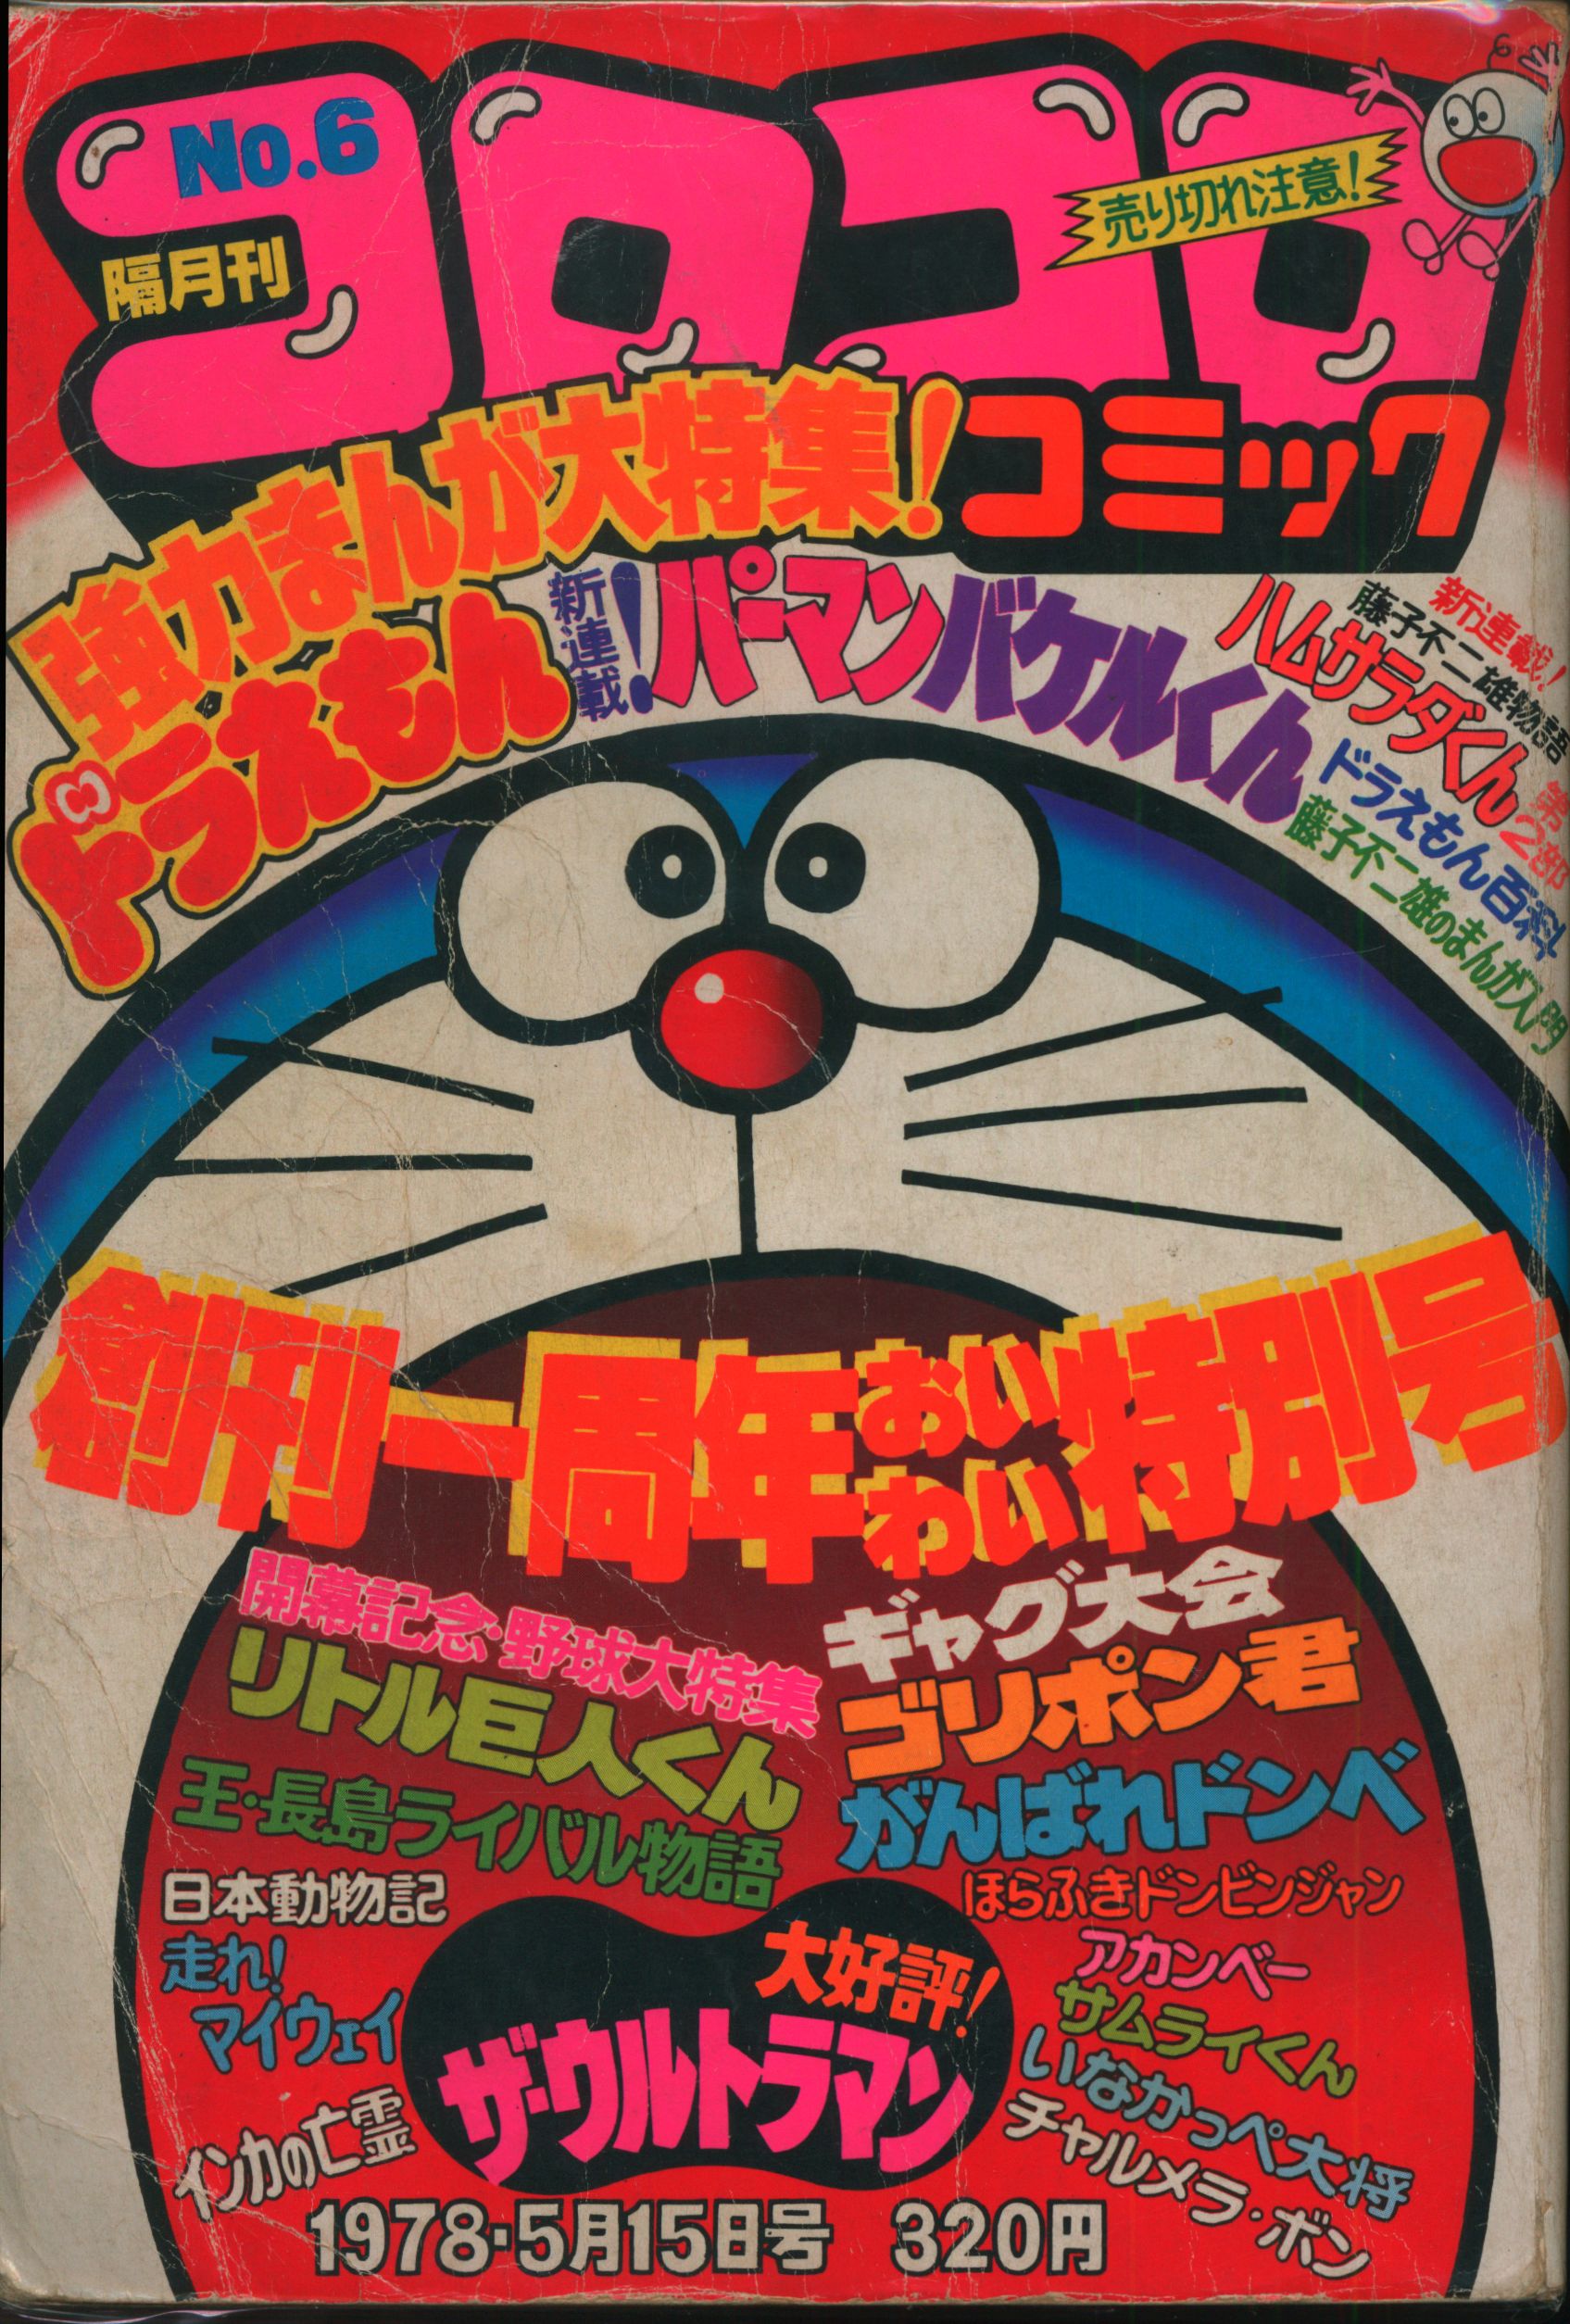 小学館 1978年(昭和53年)の漫画雑誌 コロコロコミック 1978年(昭和53年